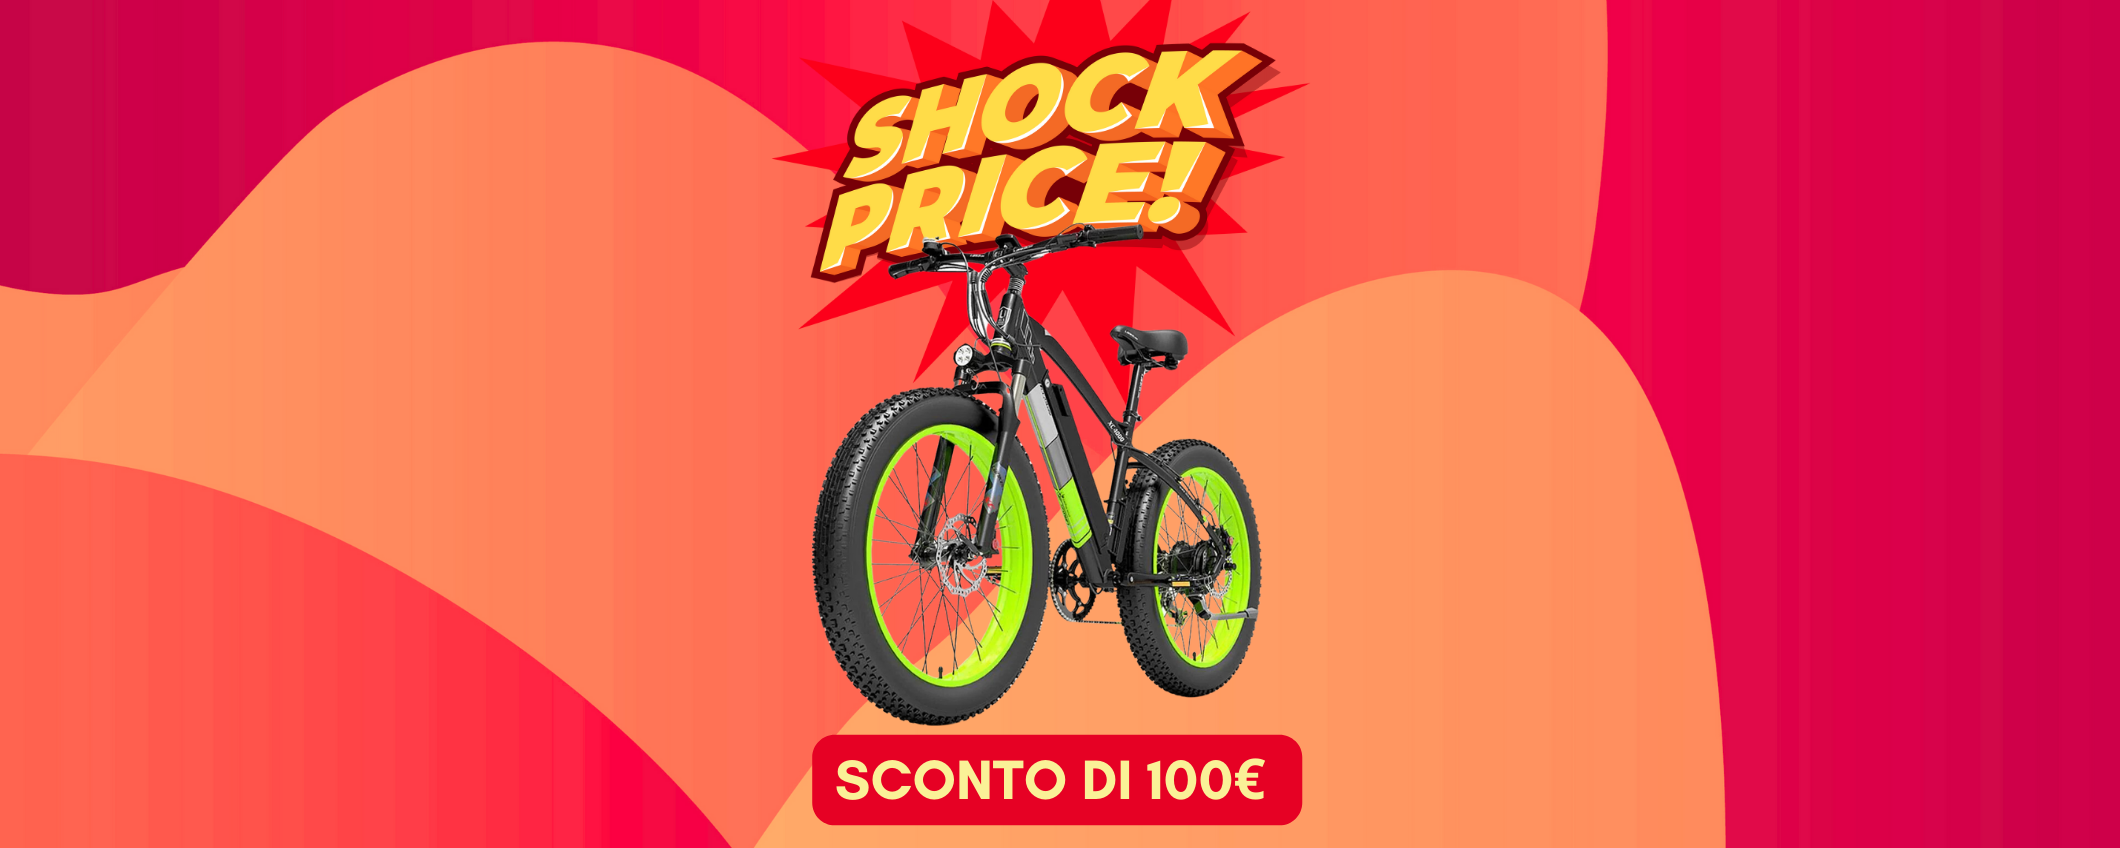 Fat Tire Mountain E-Bike in sconto di 100€, prezzo SHOCK